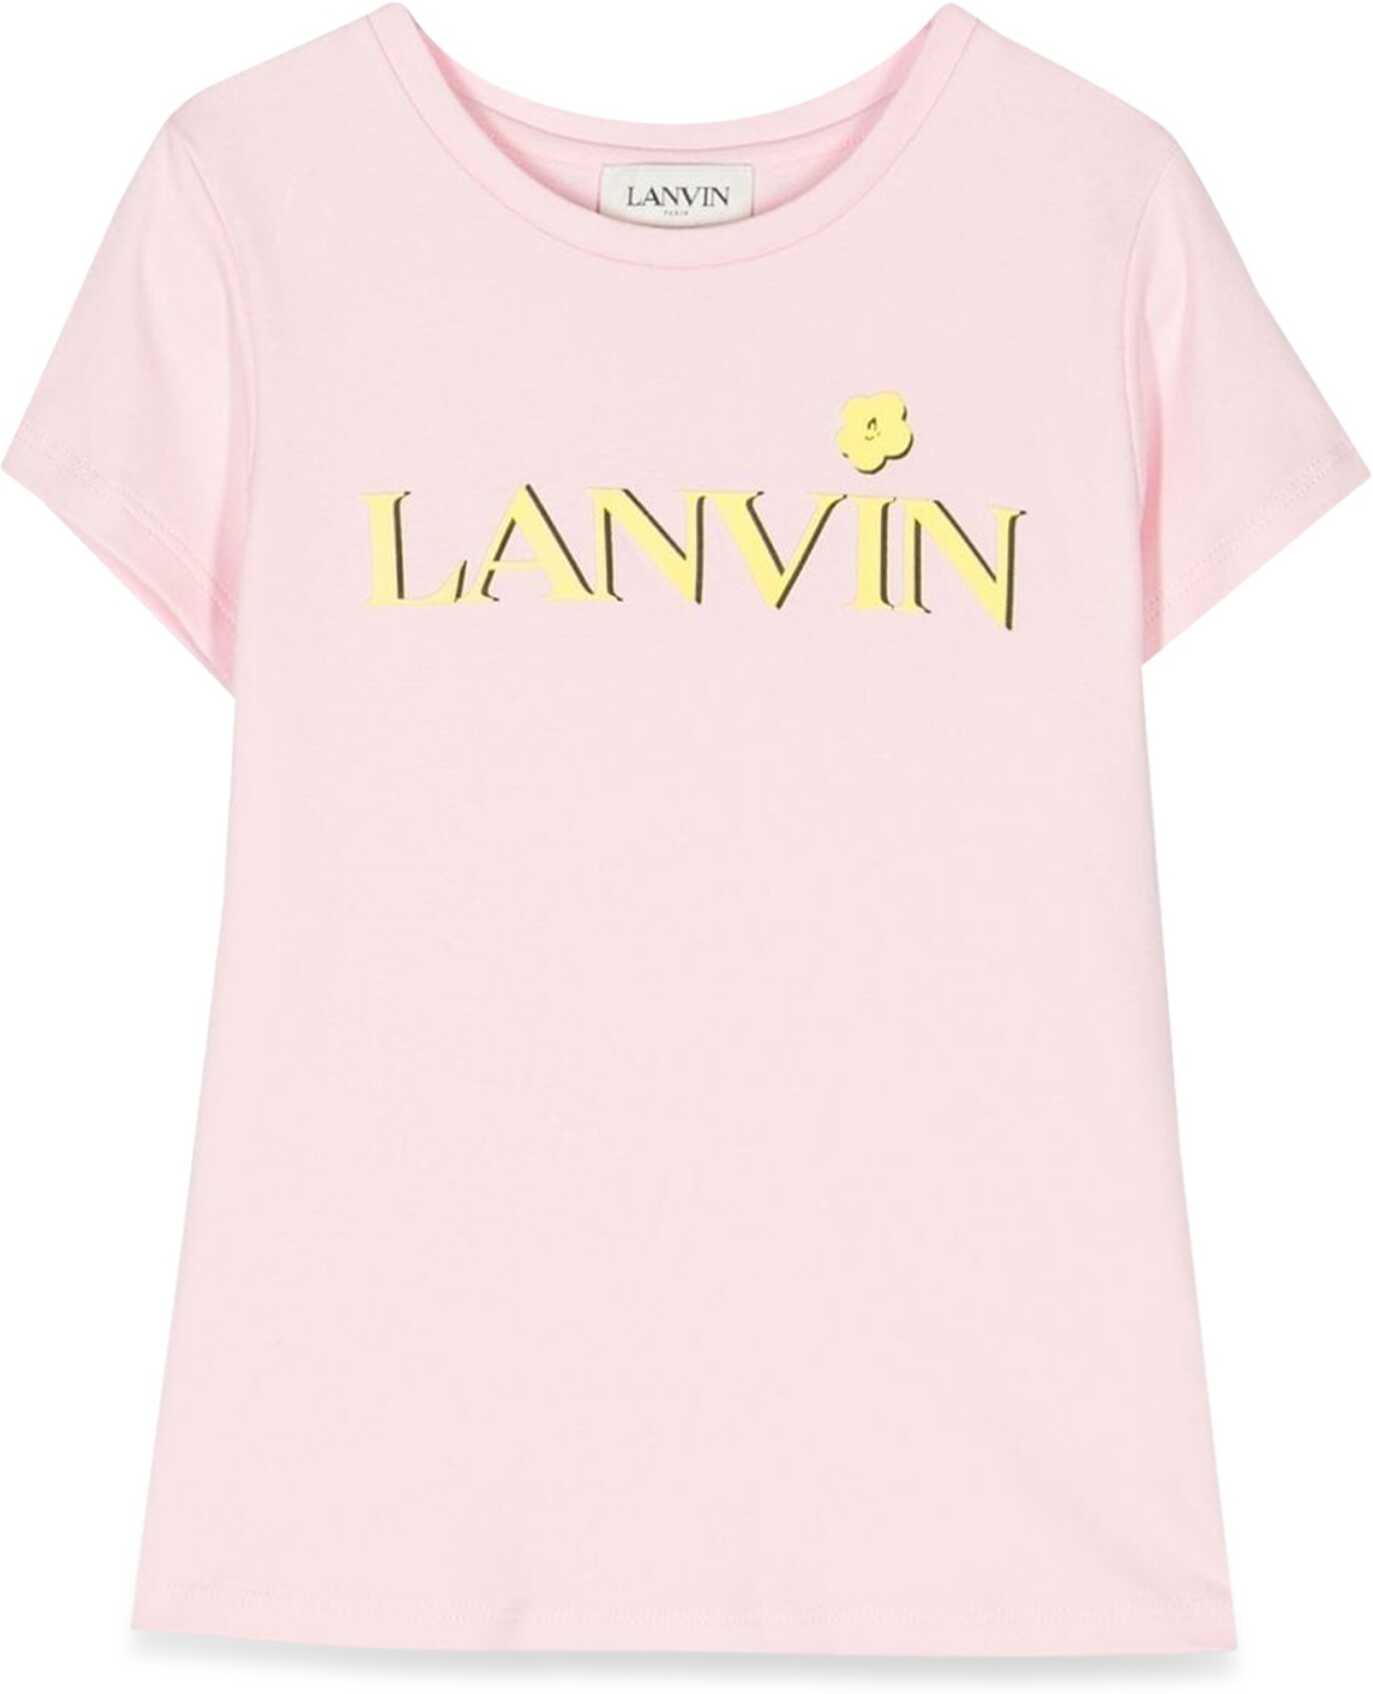 Poze Lanvin Mc Logo T-Shirt PINK